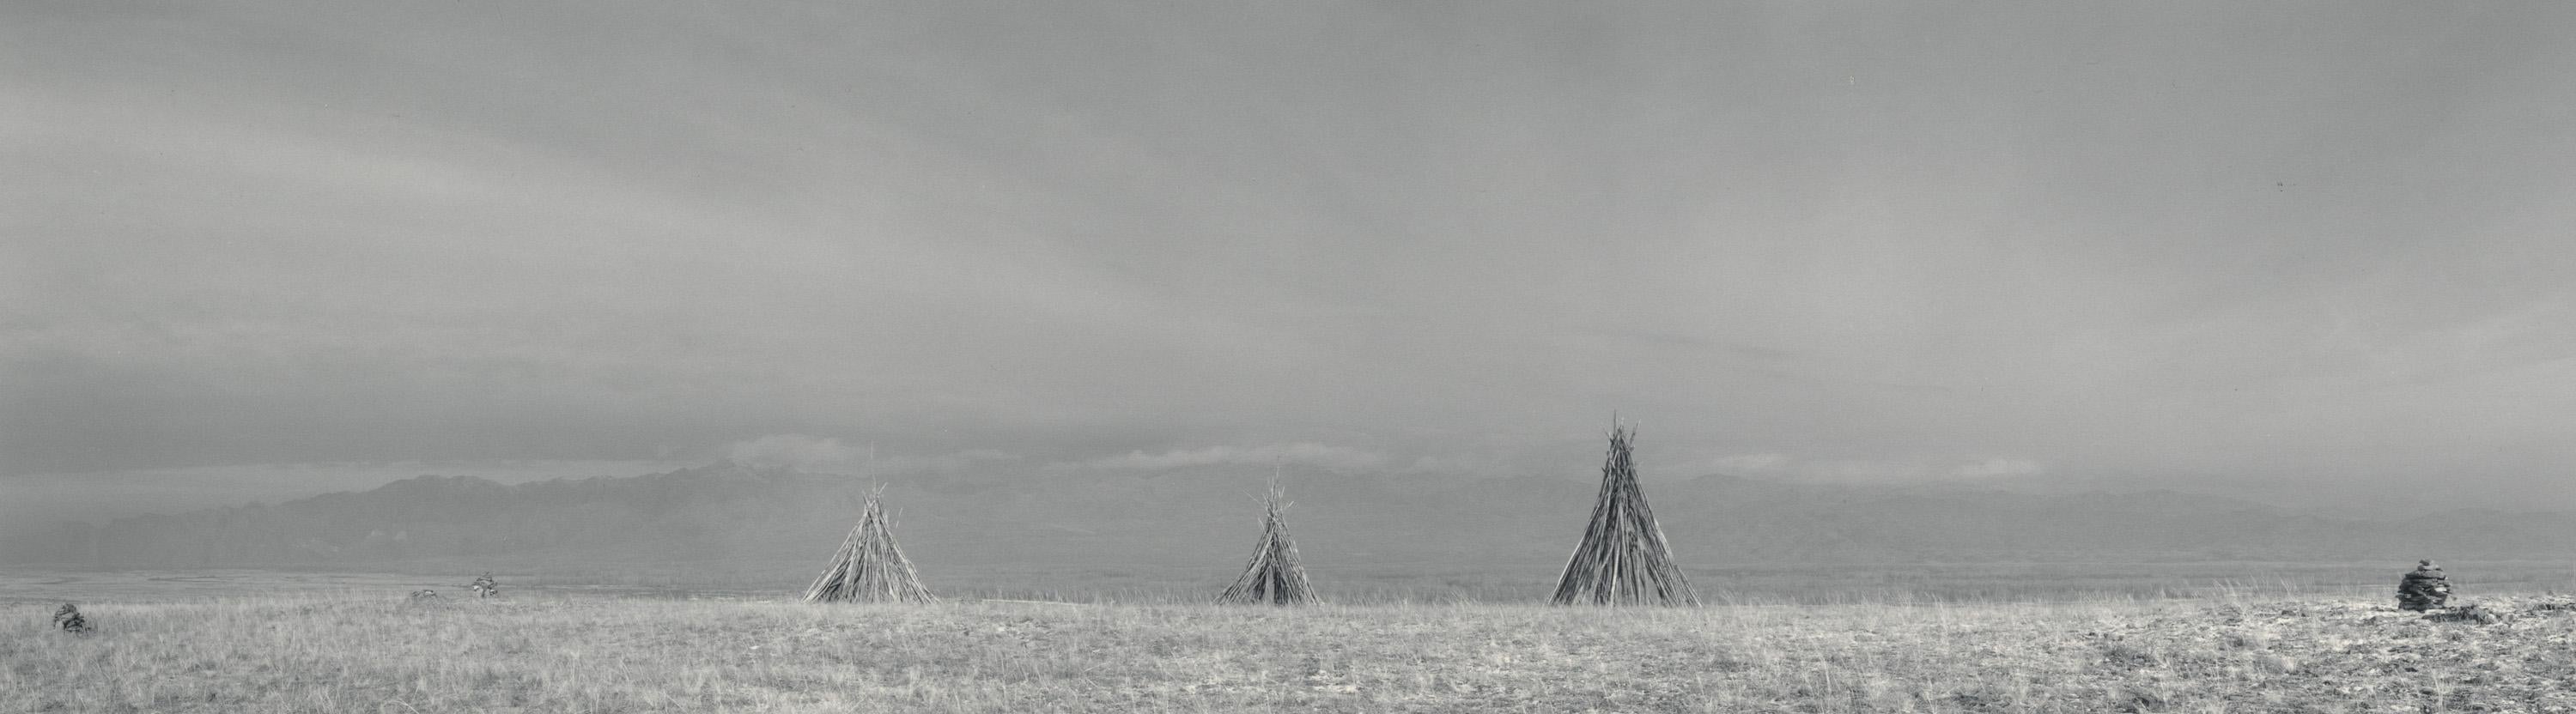 Pentti Sammallahti Black and White Photograph - Sayan, Tuva Siberia (Teepee fire lays in open field, winter sky)